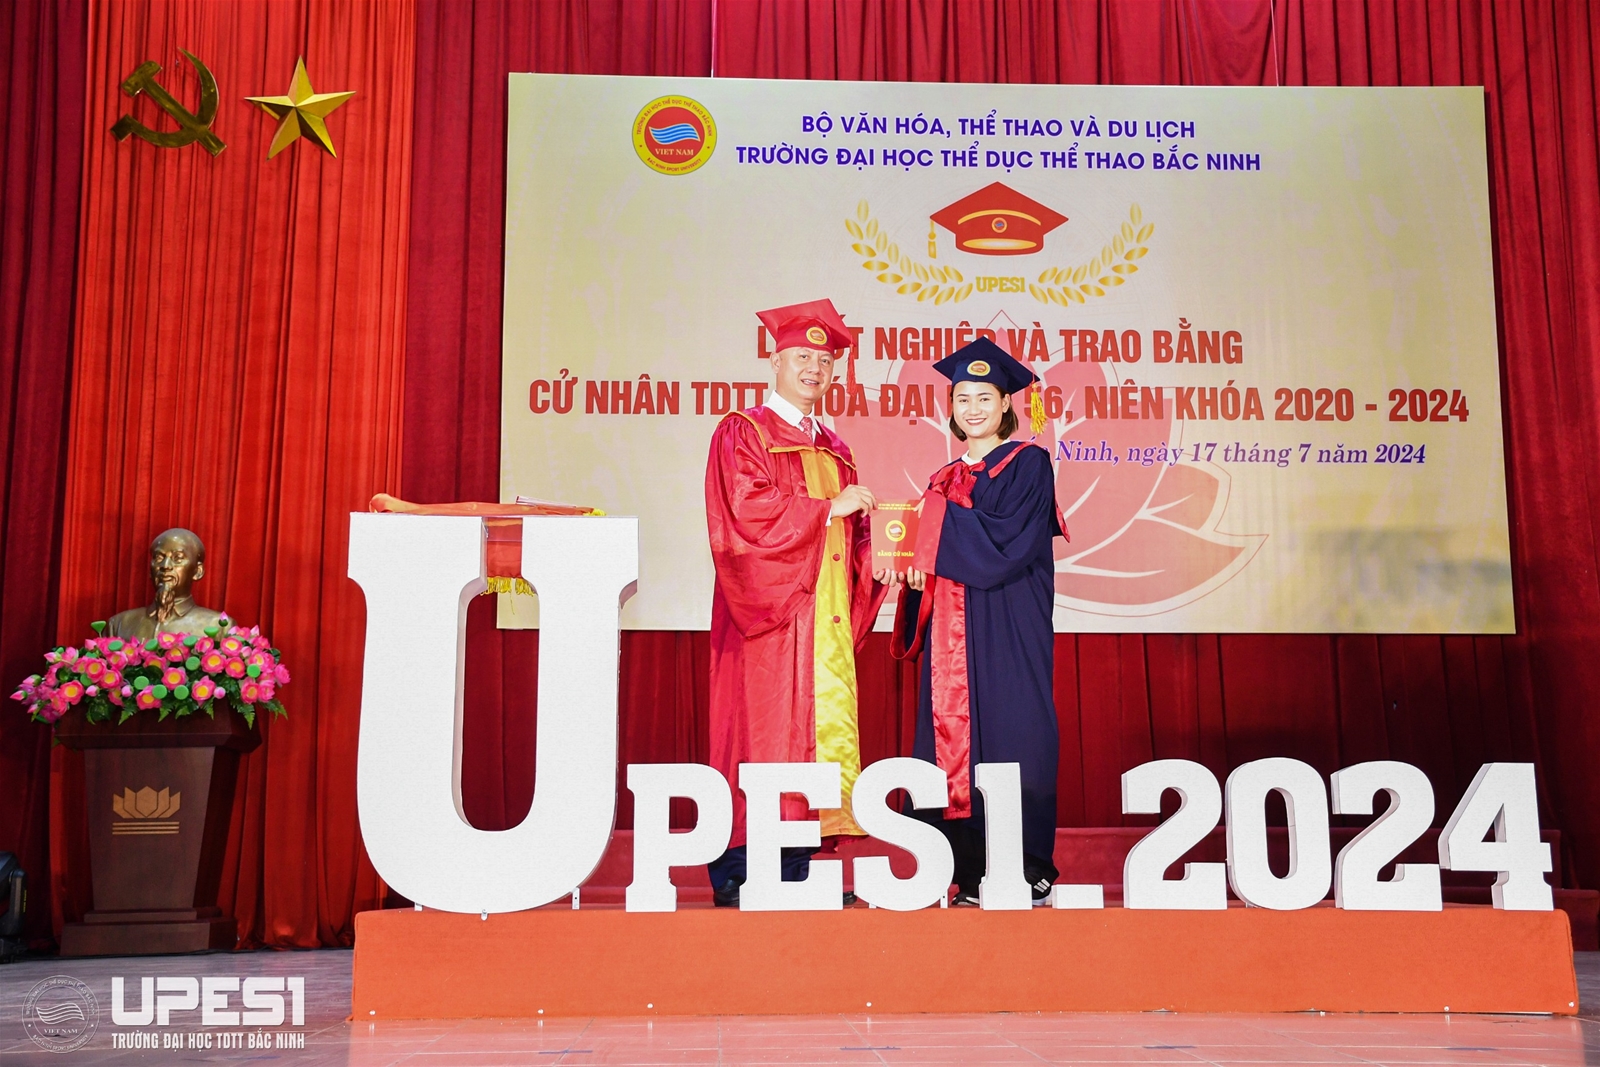 Trường Đại học TDTT Bắc Ninh - Lễ tốt nghiệp và trao bằng cử nhân TDTT năm 2024